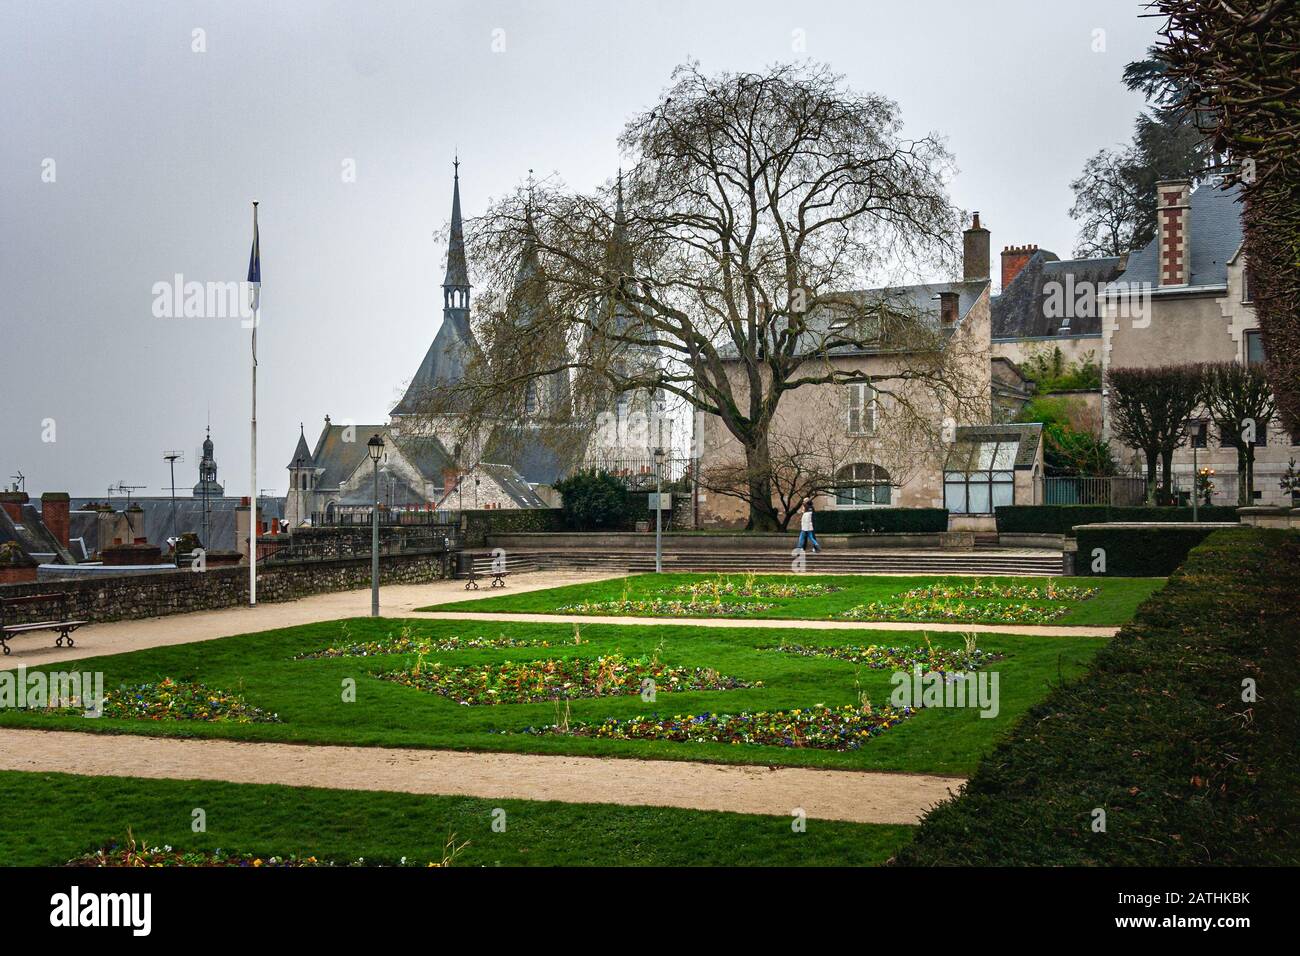 Saint-Nicolas church, public garden, Blois France Stock Photo